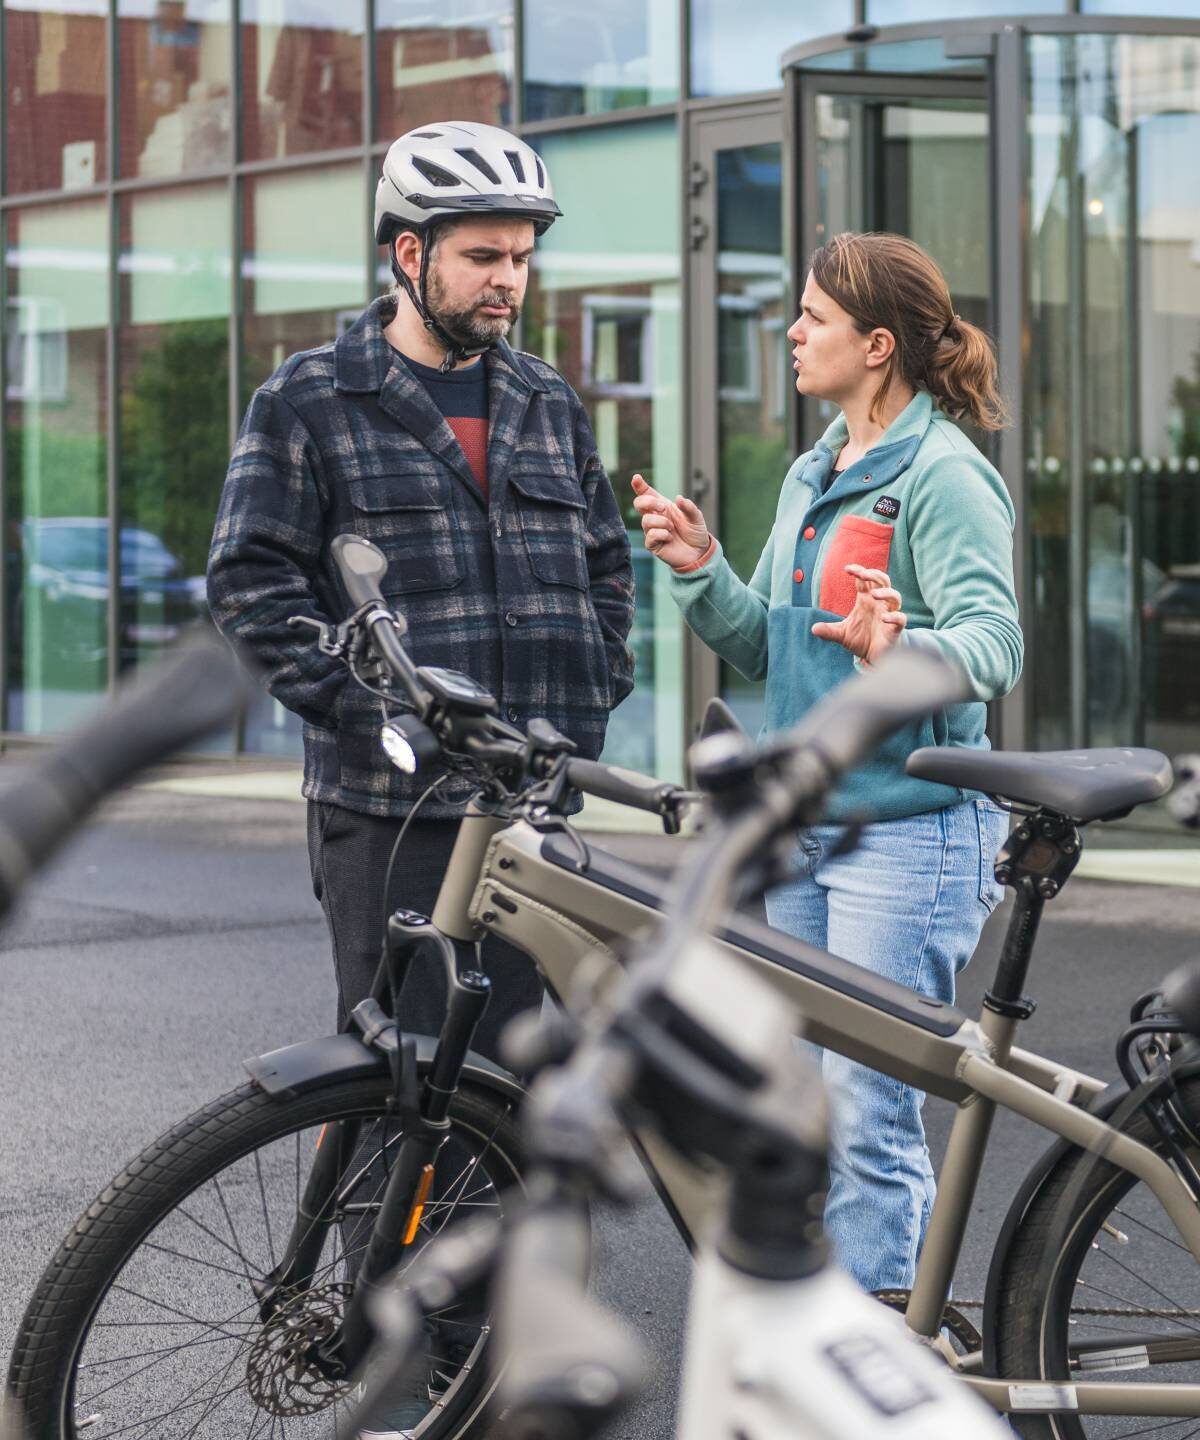 Cyclobility is gespecialiseerd in fietslease voor bedrijven